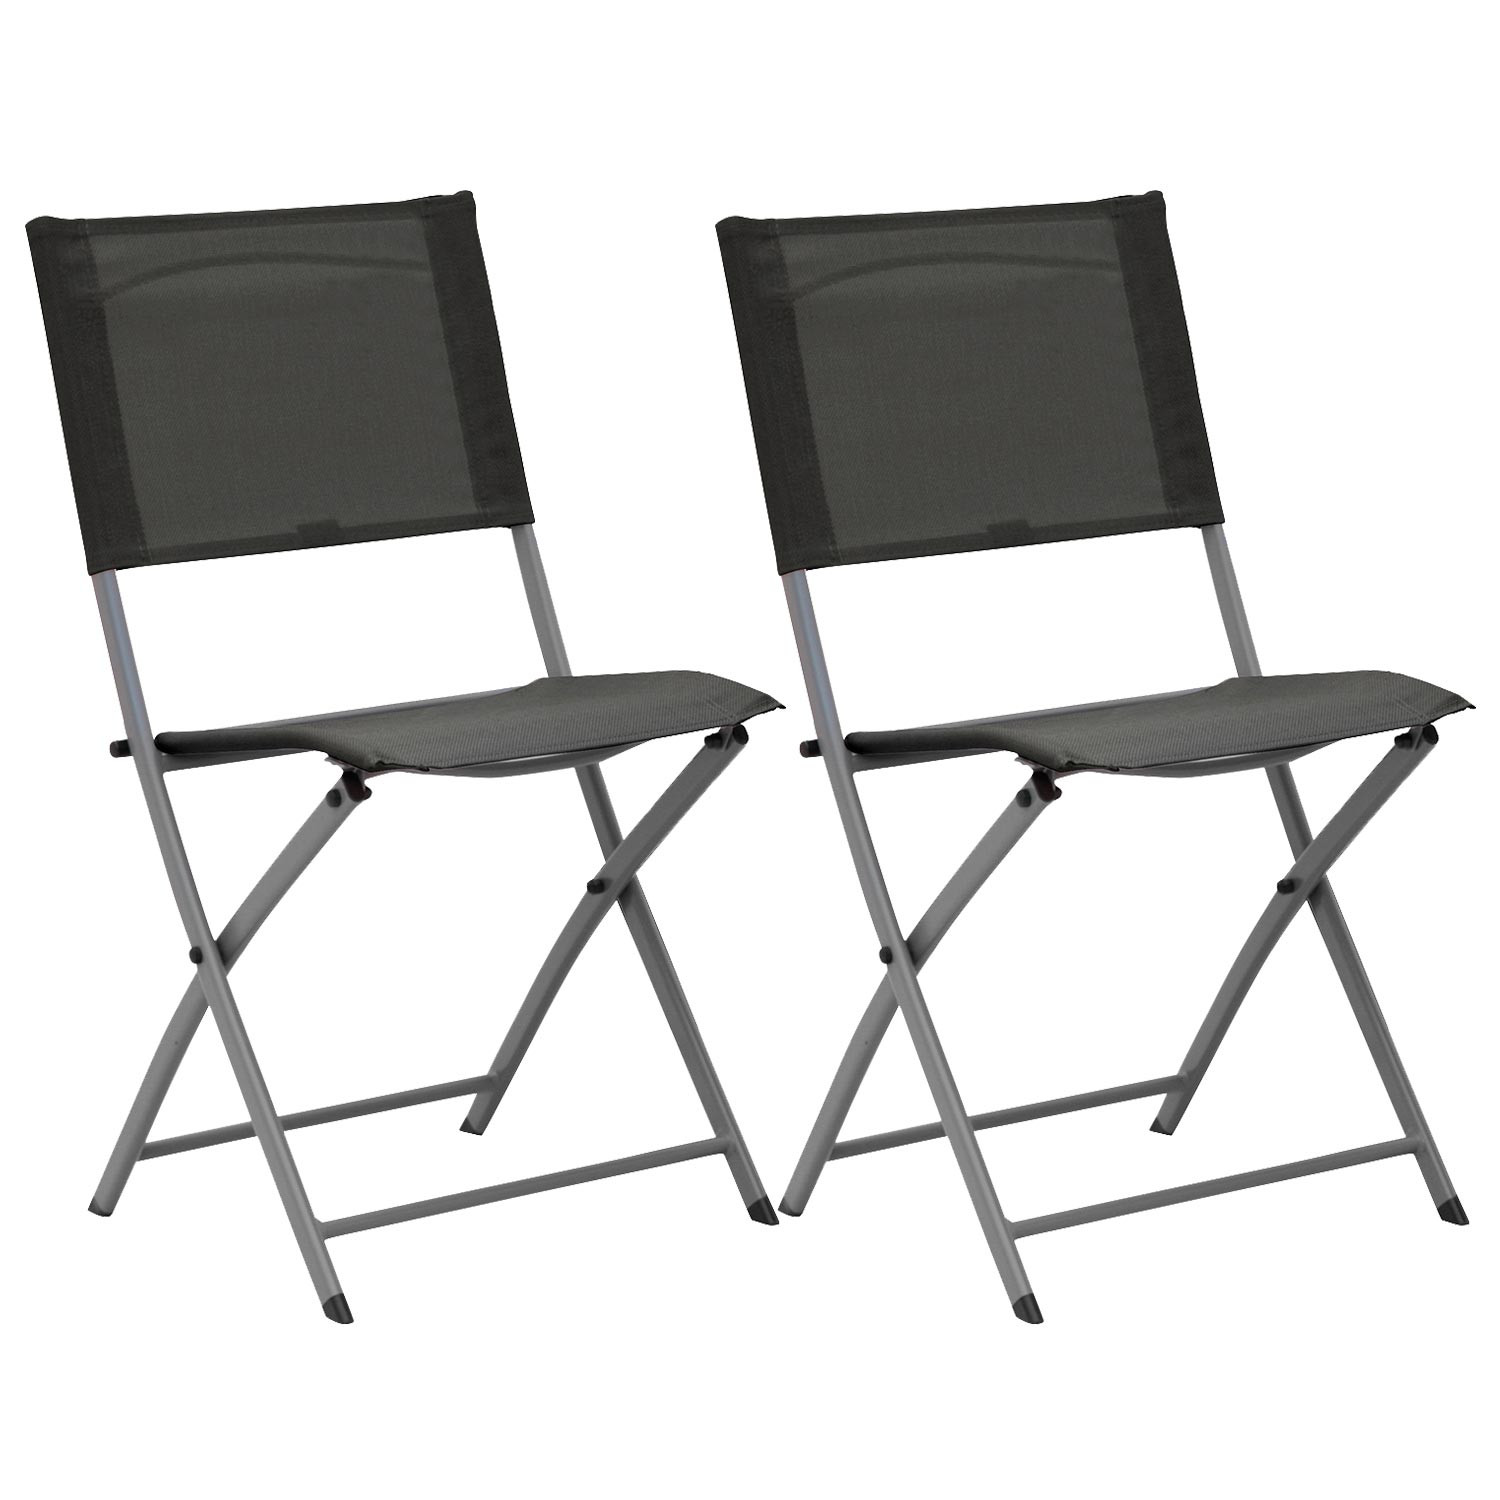 Nuevos diseños - silla plegable Oslo - En negro - Piel  Sillas de comedor  plegables, Sillas comedor modernas, Sillas plegables